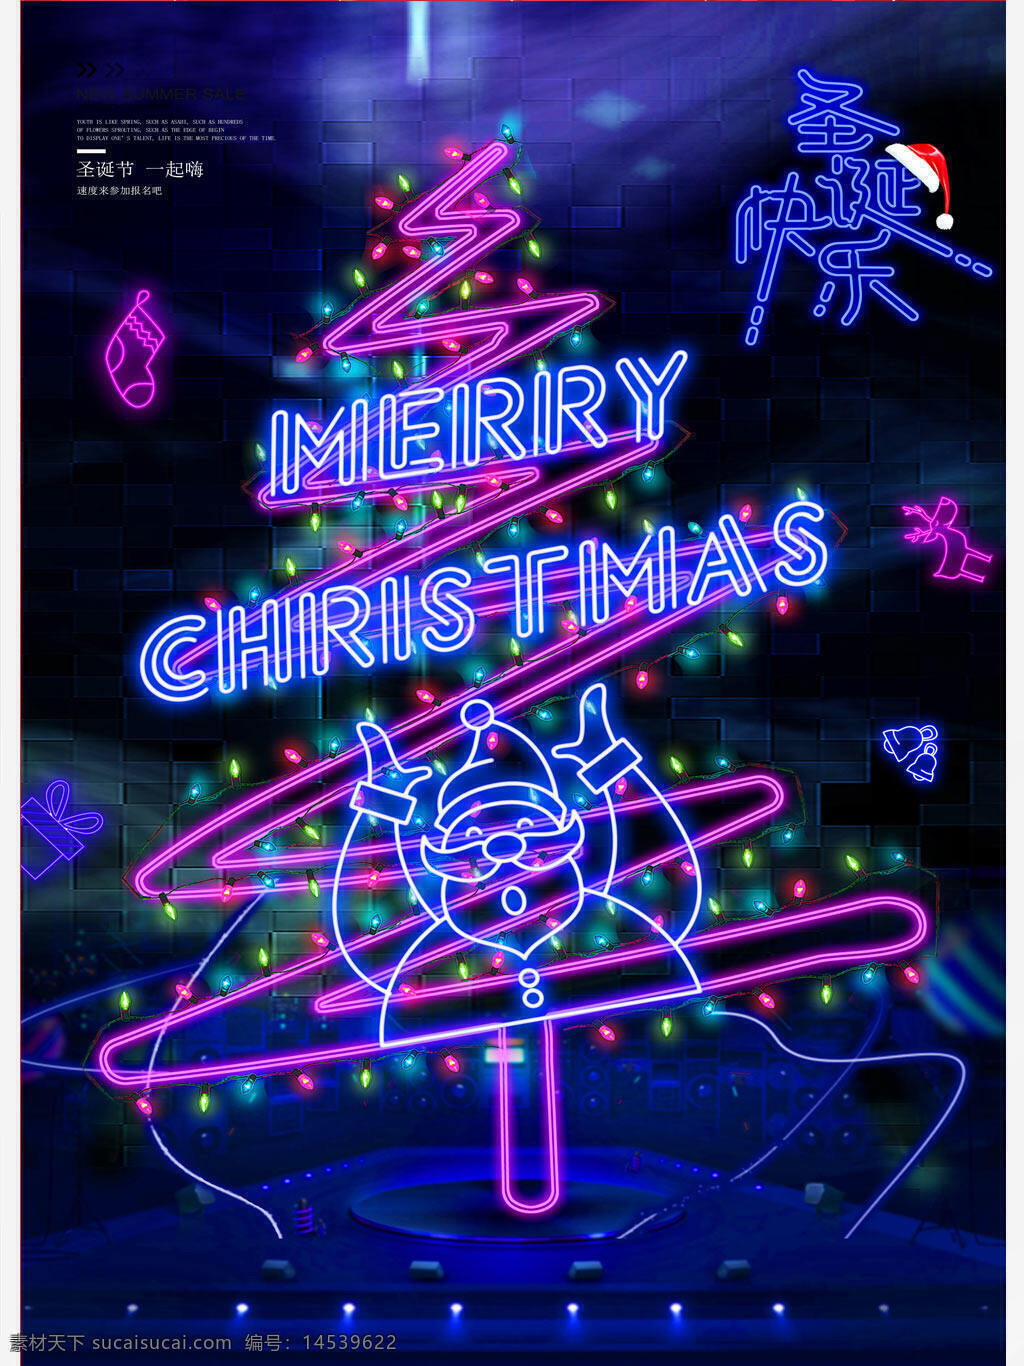 灯管霓虹创意圣诞节圣诞快乐促销宣传海报 灯管 霓虹 创意 圣诞节 圣诞快乐 促销 宣传海报